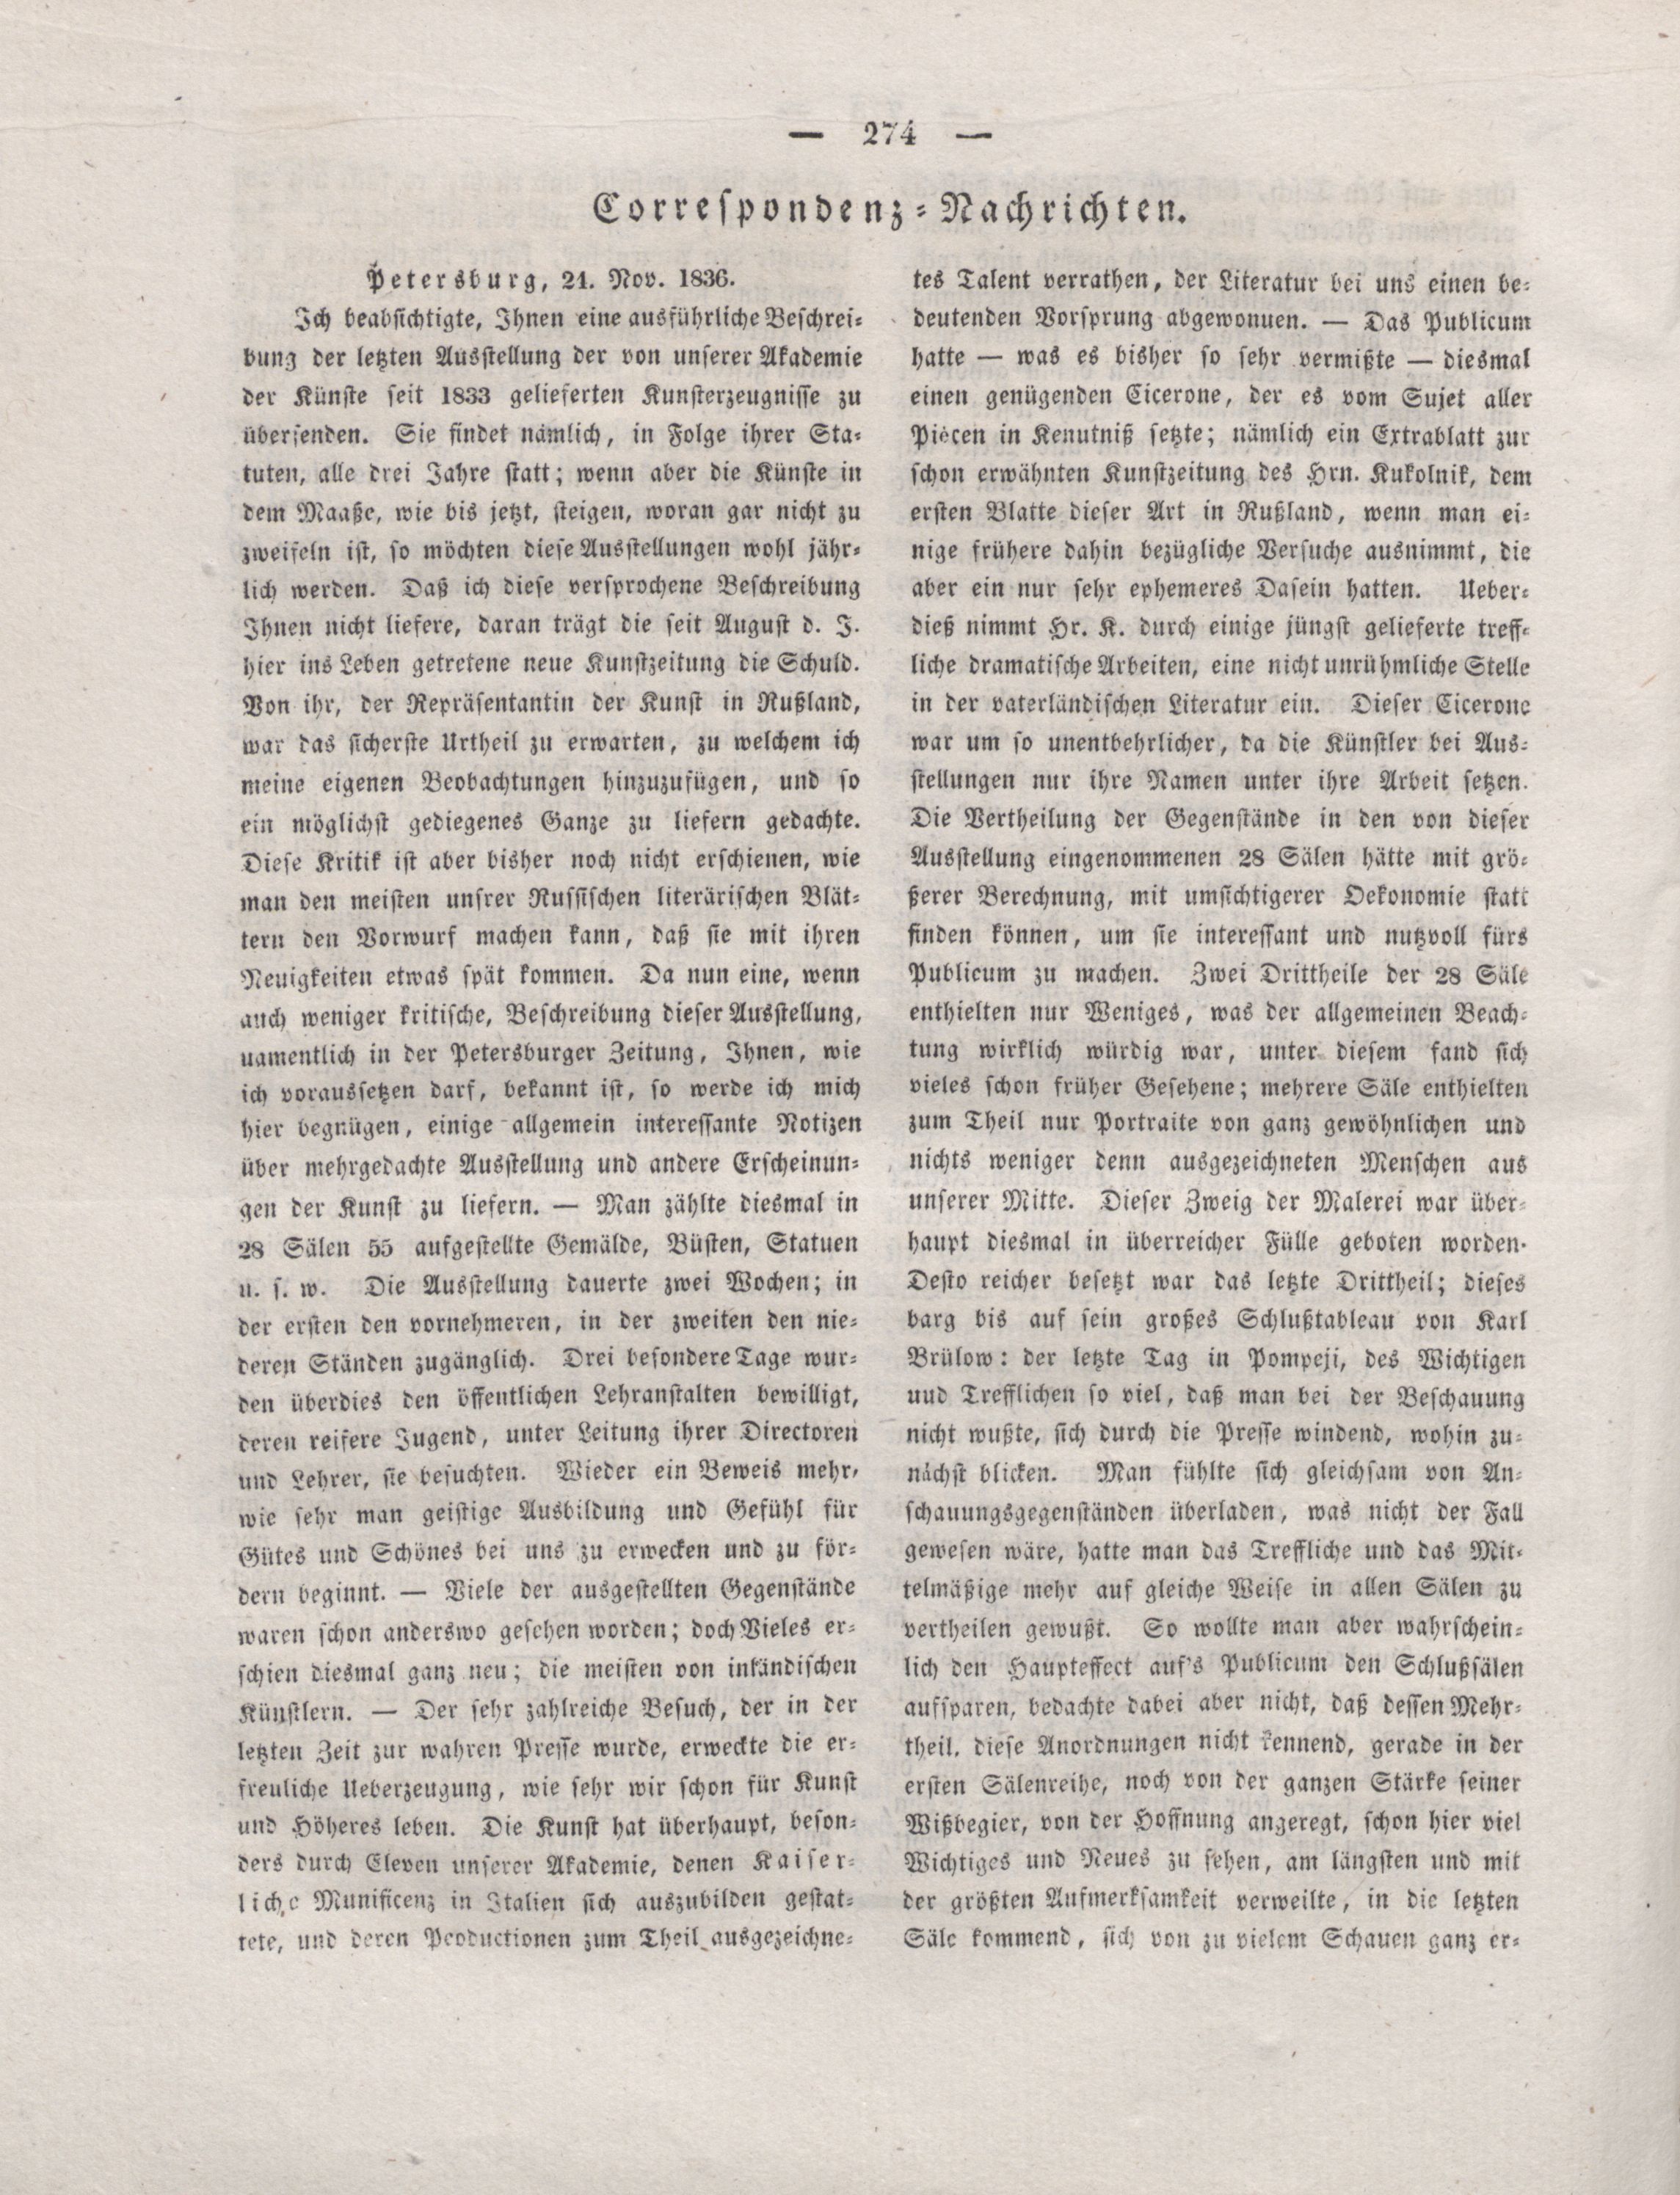 Der Refraktor [1836] (1836) | 275. (274) Основной текст